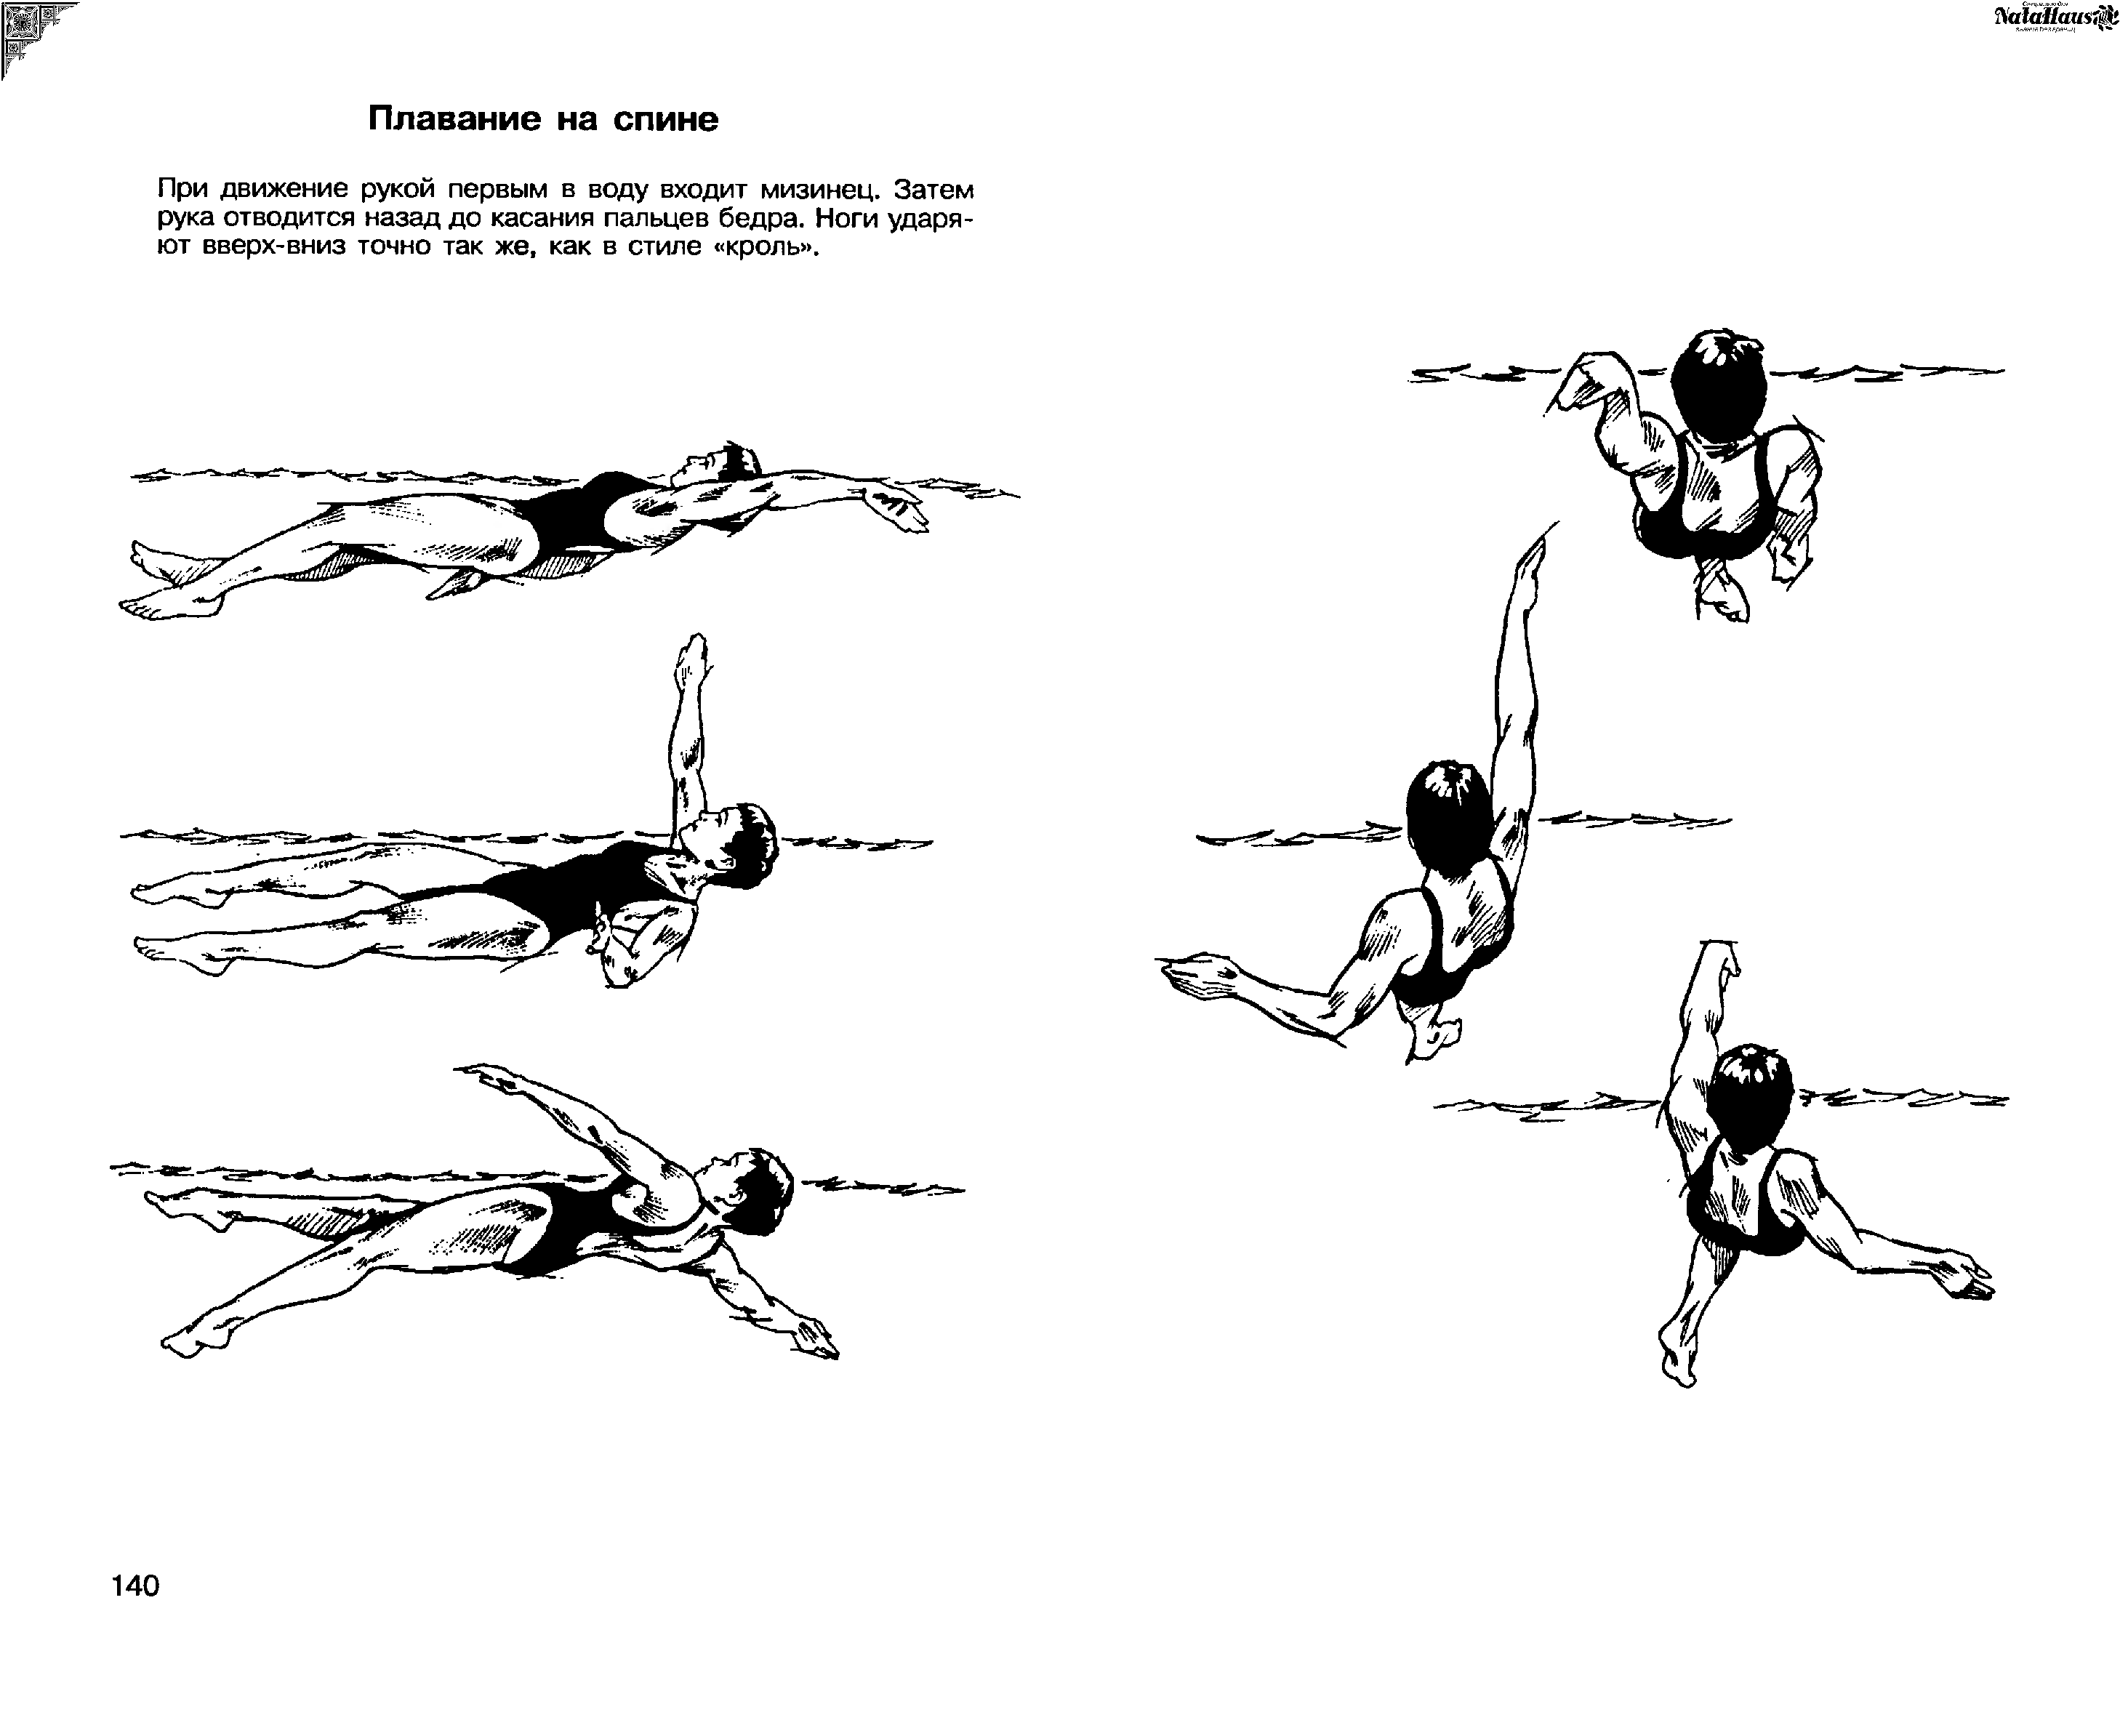 Обучение плаванию кролем на спине. Техники плавания Кроль на спине. Стиль плавания Кроль на спине. Кроль на спине техника плавания. Техника плавания кролем на спине движение ног.